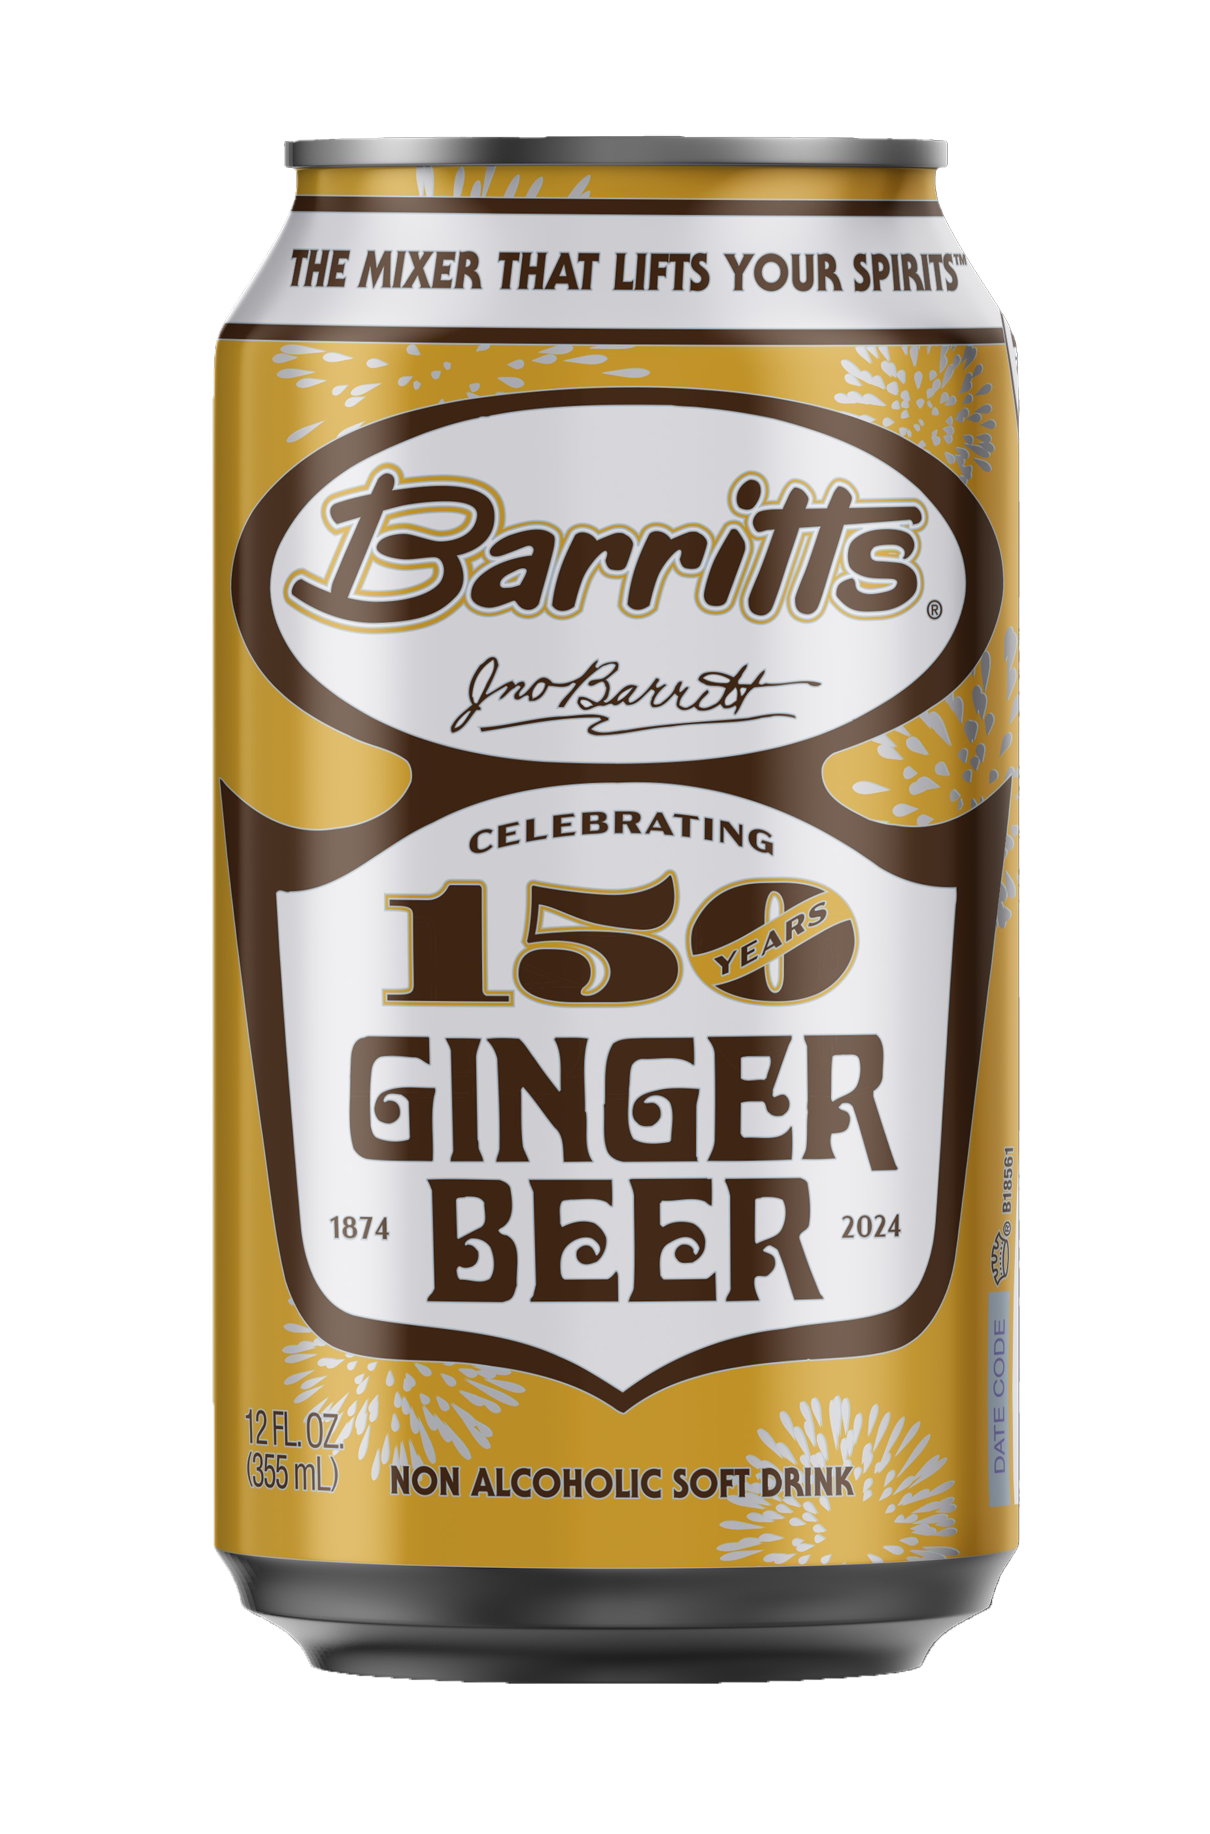 Barritt's Original Ginger Beer